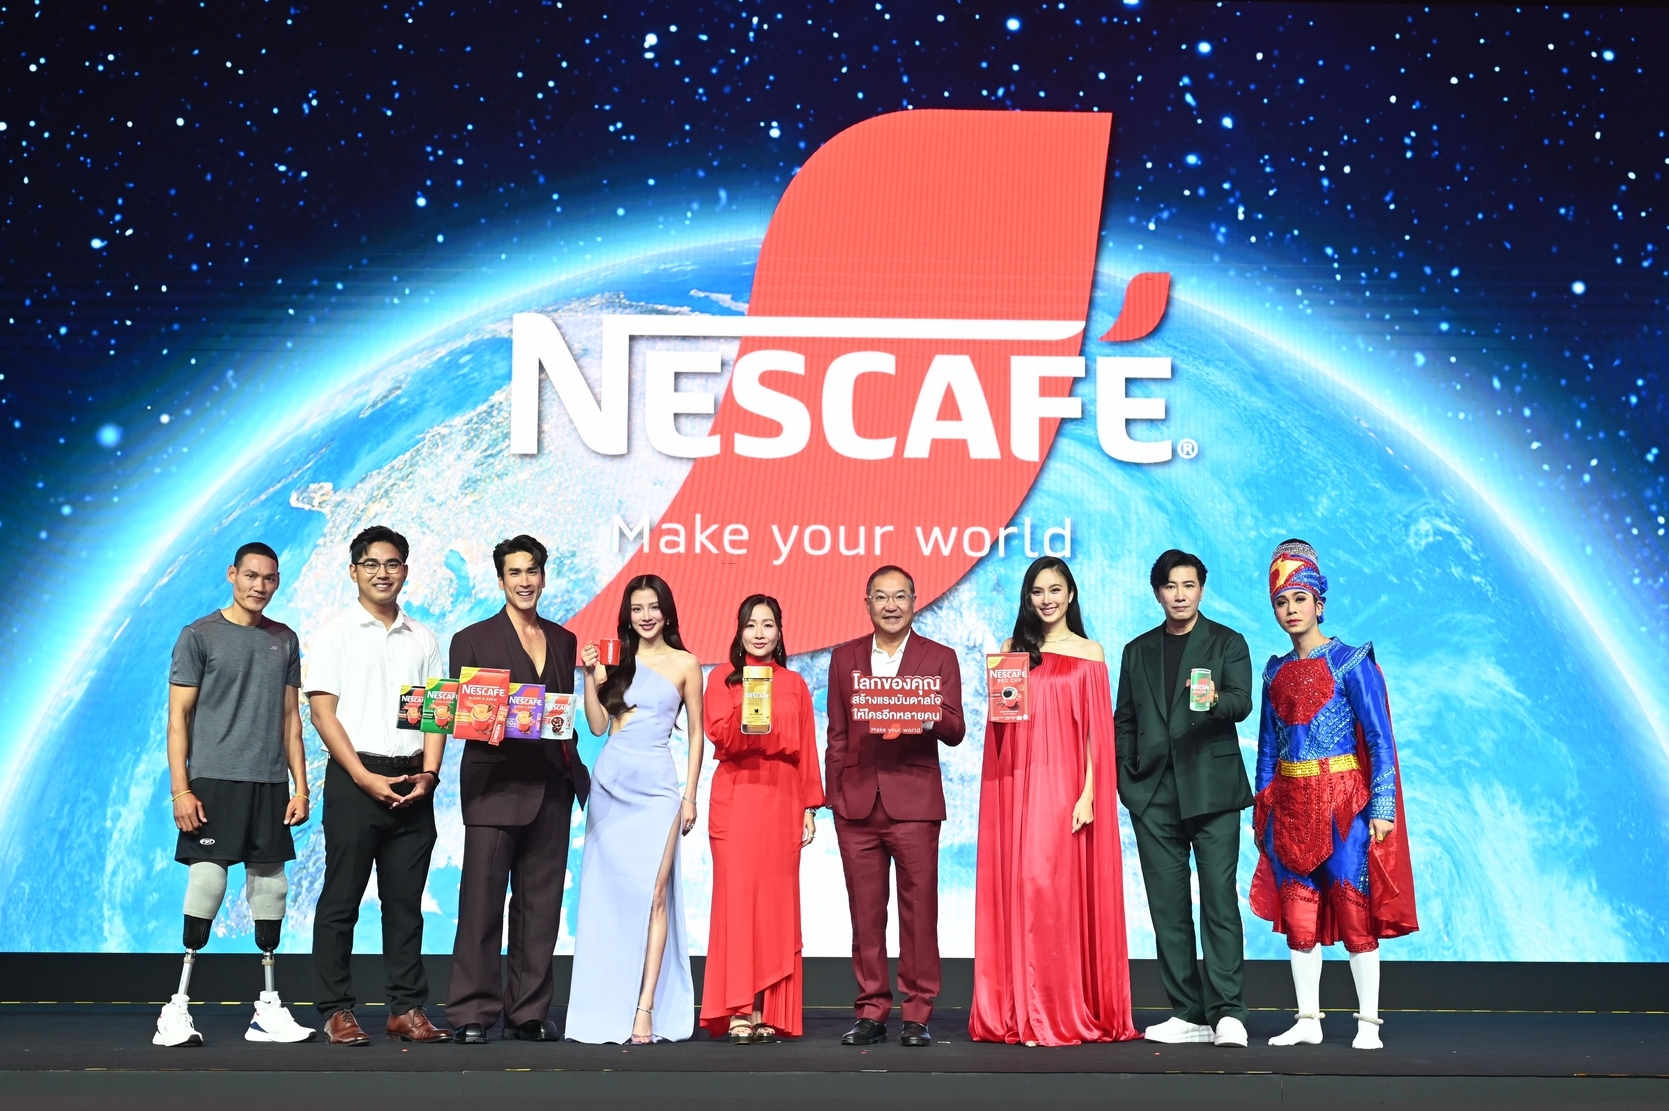 เนสกาแฟเปิดแคมเปญสร้างแรงบันดาลใจ “NESCAFÉ Make Your World” ยิ่งใหญ่ที่สุดในรอบทศวรรษ ชวนคนไทยร่วมปลุกโลกกับเมกะอีเวนต์สุดล้ำ ผ่านเทคโนโลยี AI ที่เอ็มสเฟียร์ 13-21 ม.ค. นี้